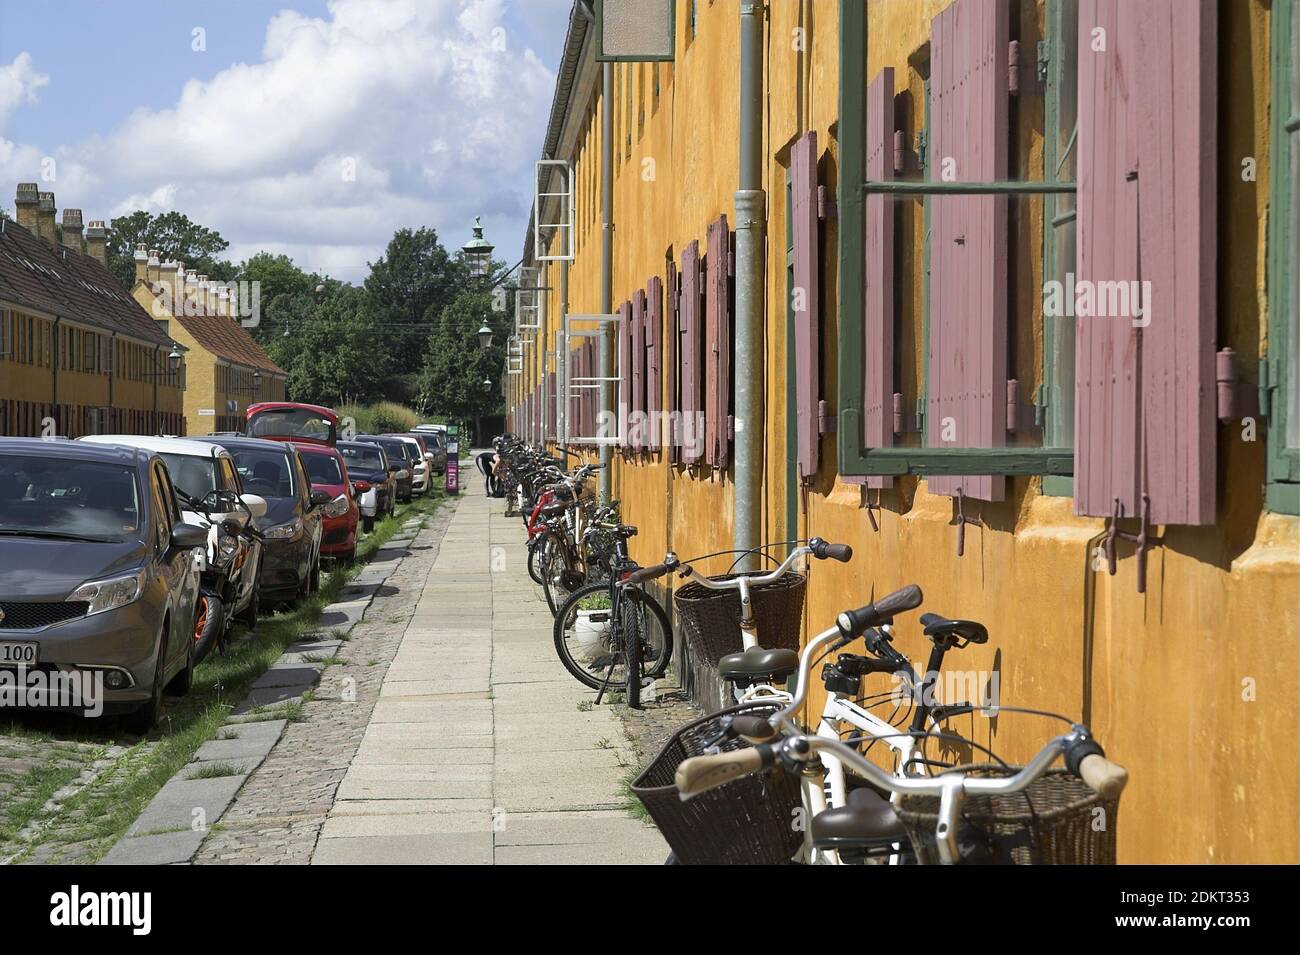 Copenhagen, Kopenhagen, Danimarca, Dänemark; Nyboder - quartiere residenziale storico - ex caserme. Historiisches Wohnviertel - ehemaligie Kaserne. Foto Stock